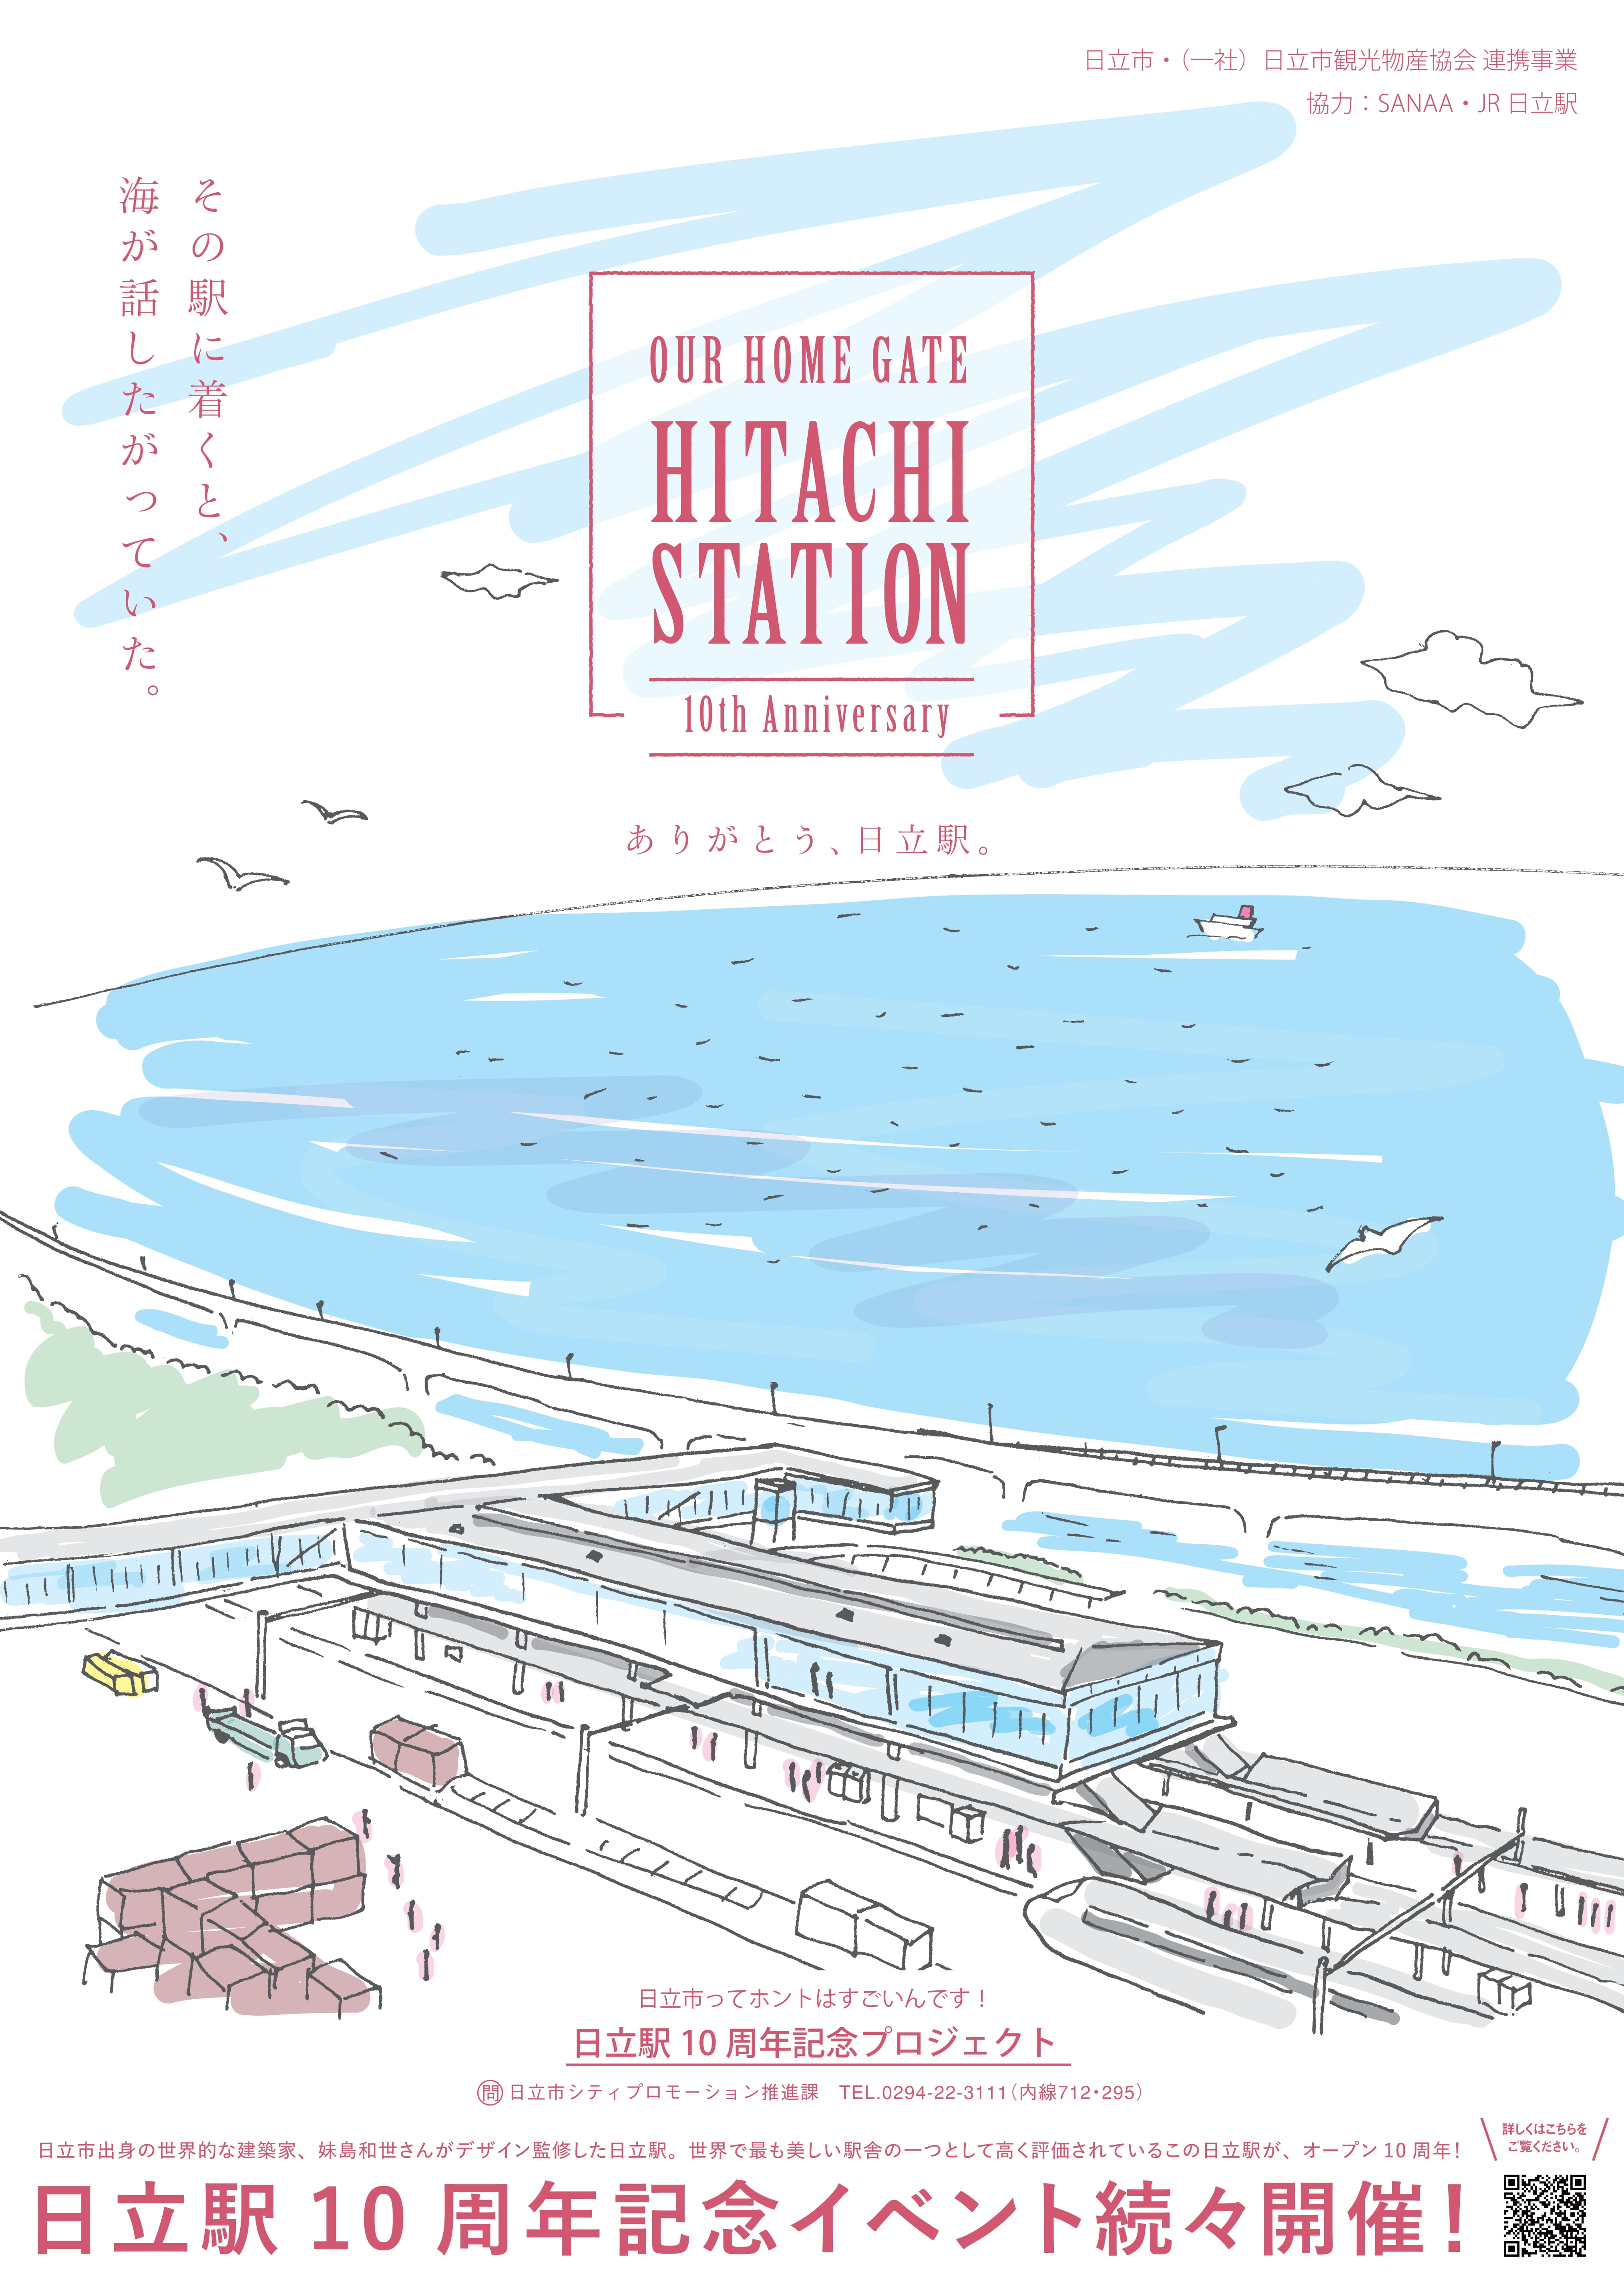 世界で最も美しい駅舎の一つ”日立駅”の10周年を祝うプロジェクト『その駅に着くと、海が話したがっていた。』が始動！